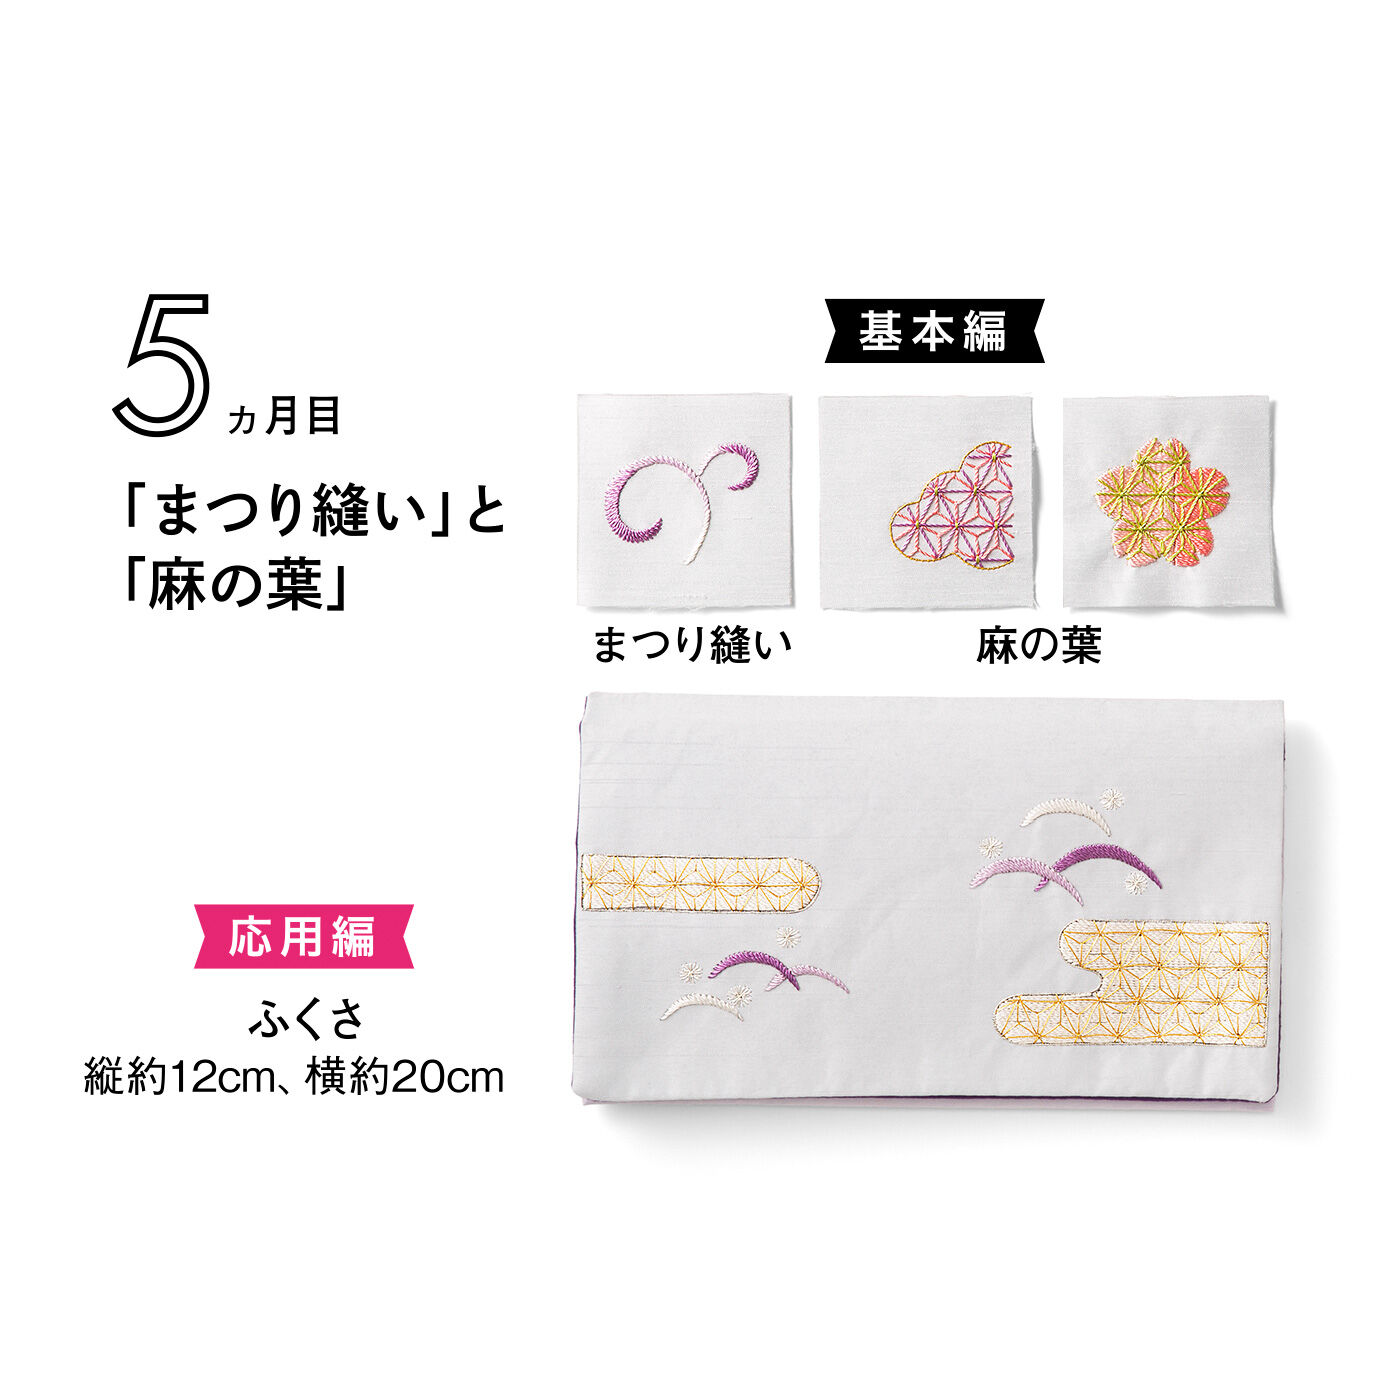 Couturier|日本の美を学ぶ「はじめてさんのきほんのき」日本刺しゅうレッスン|タイプ6　※このデザインには日本刺しゅう針は入っていません